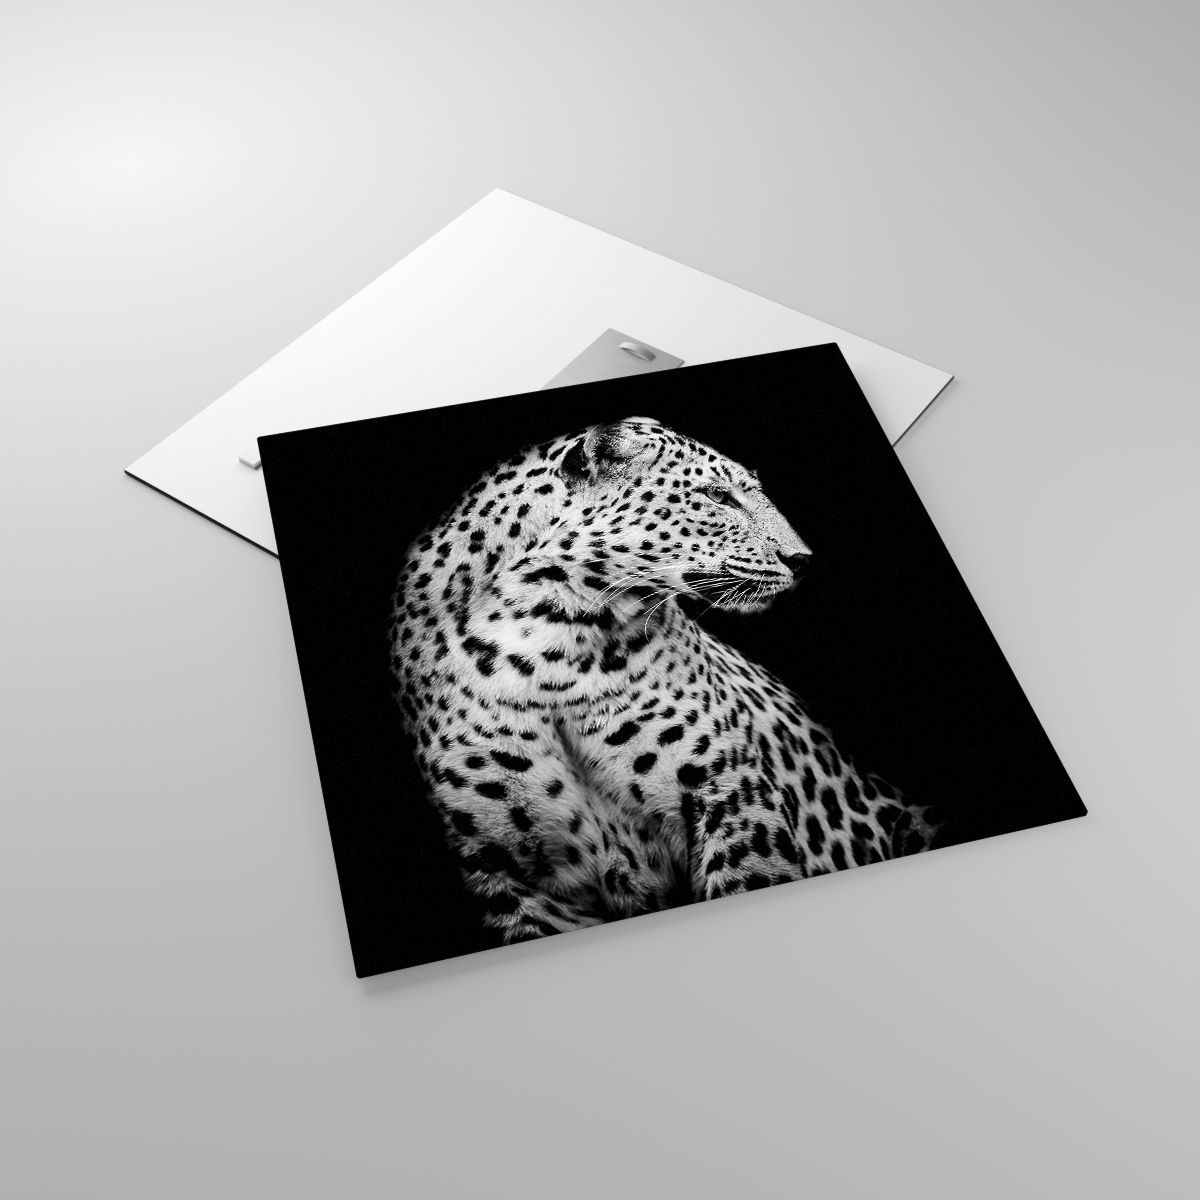 Glasbild Tiere, Glasbild Leopard, Glasbild Schwarz Und Weiß, Glasbild Raubtier, Glasbild Natur